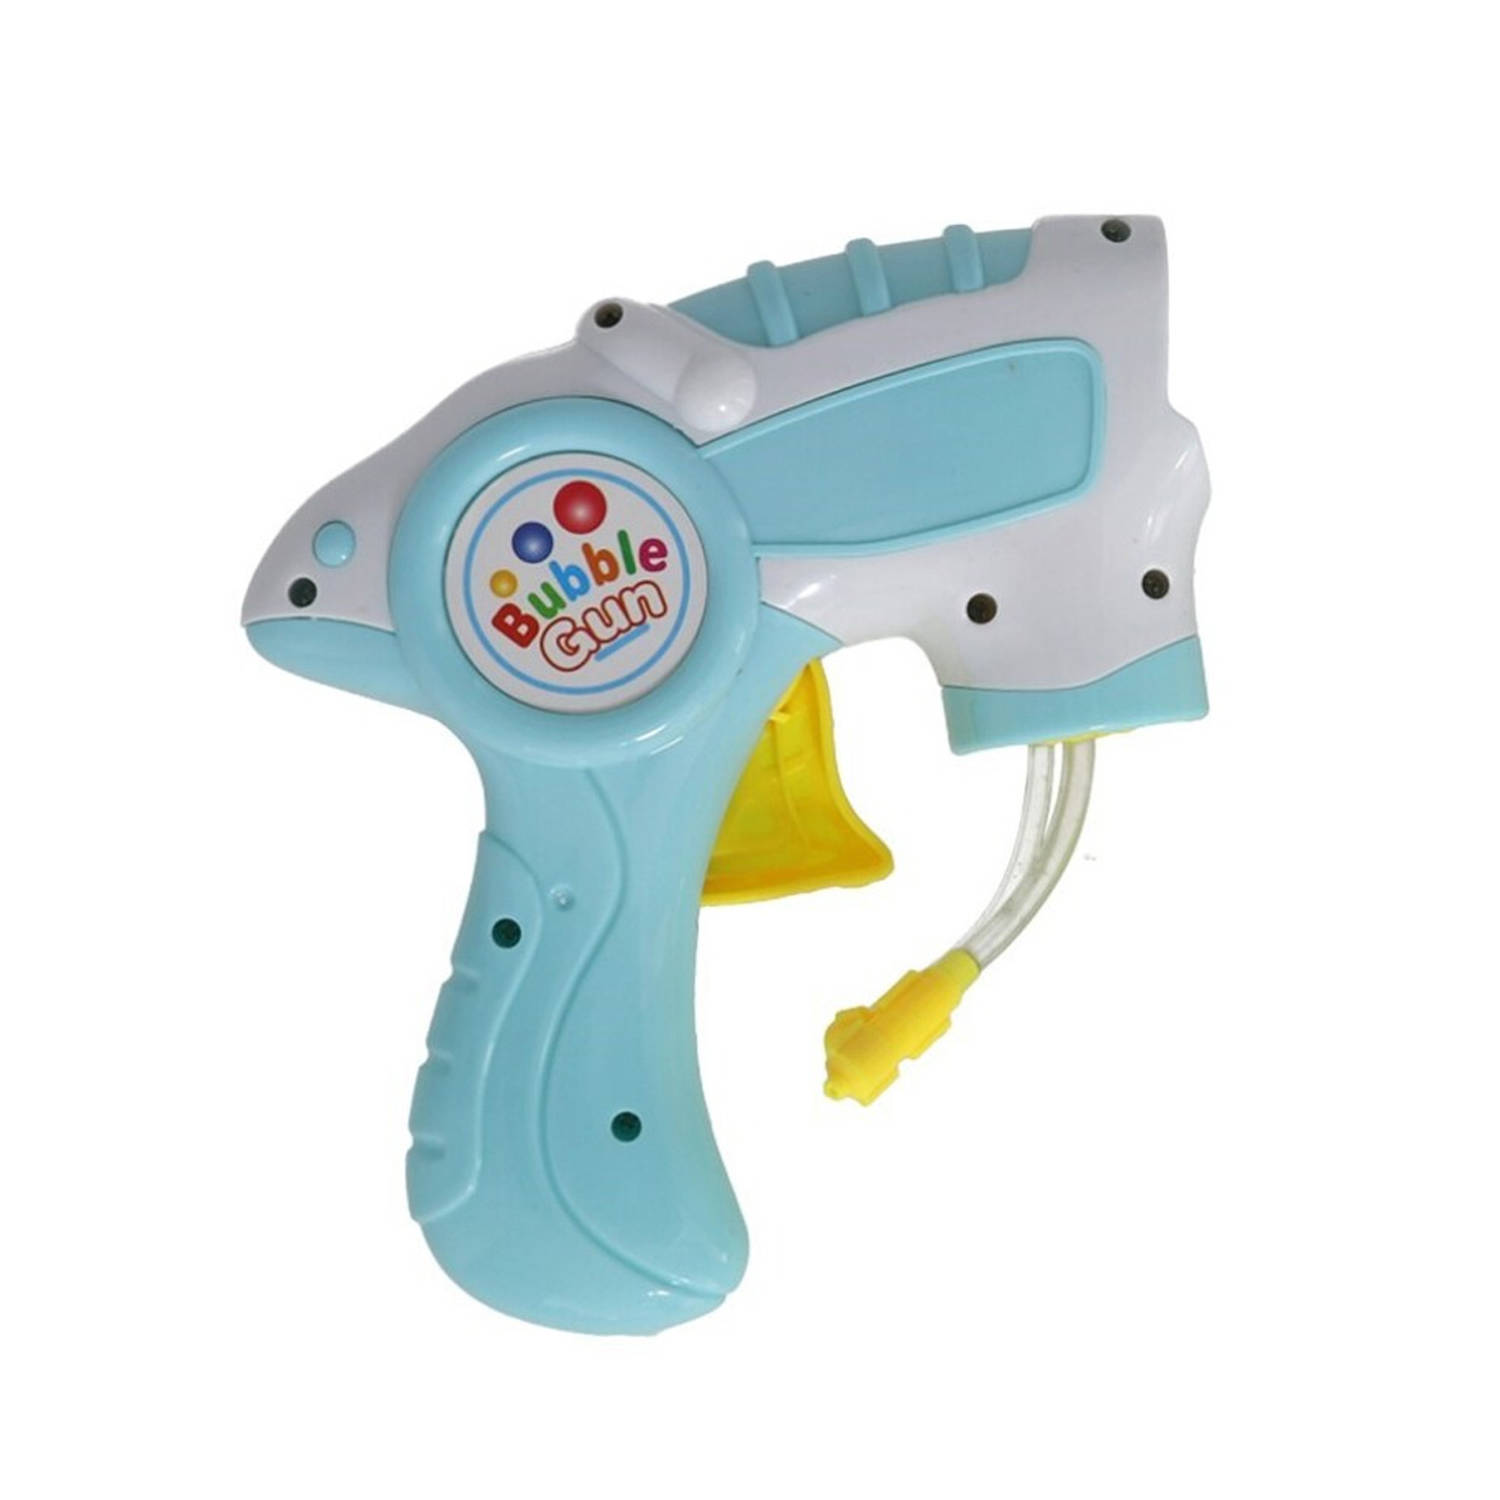 Bellenblaas speelgoed pistool met vullingen lichtblauw 15 cm plastic bellen blazen Bellenblaas